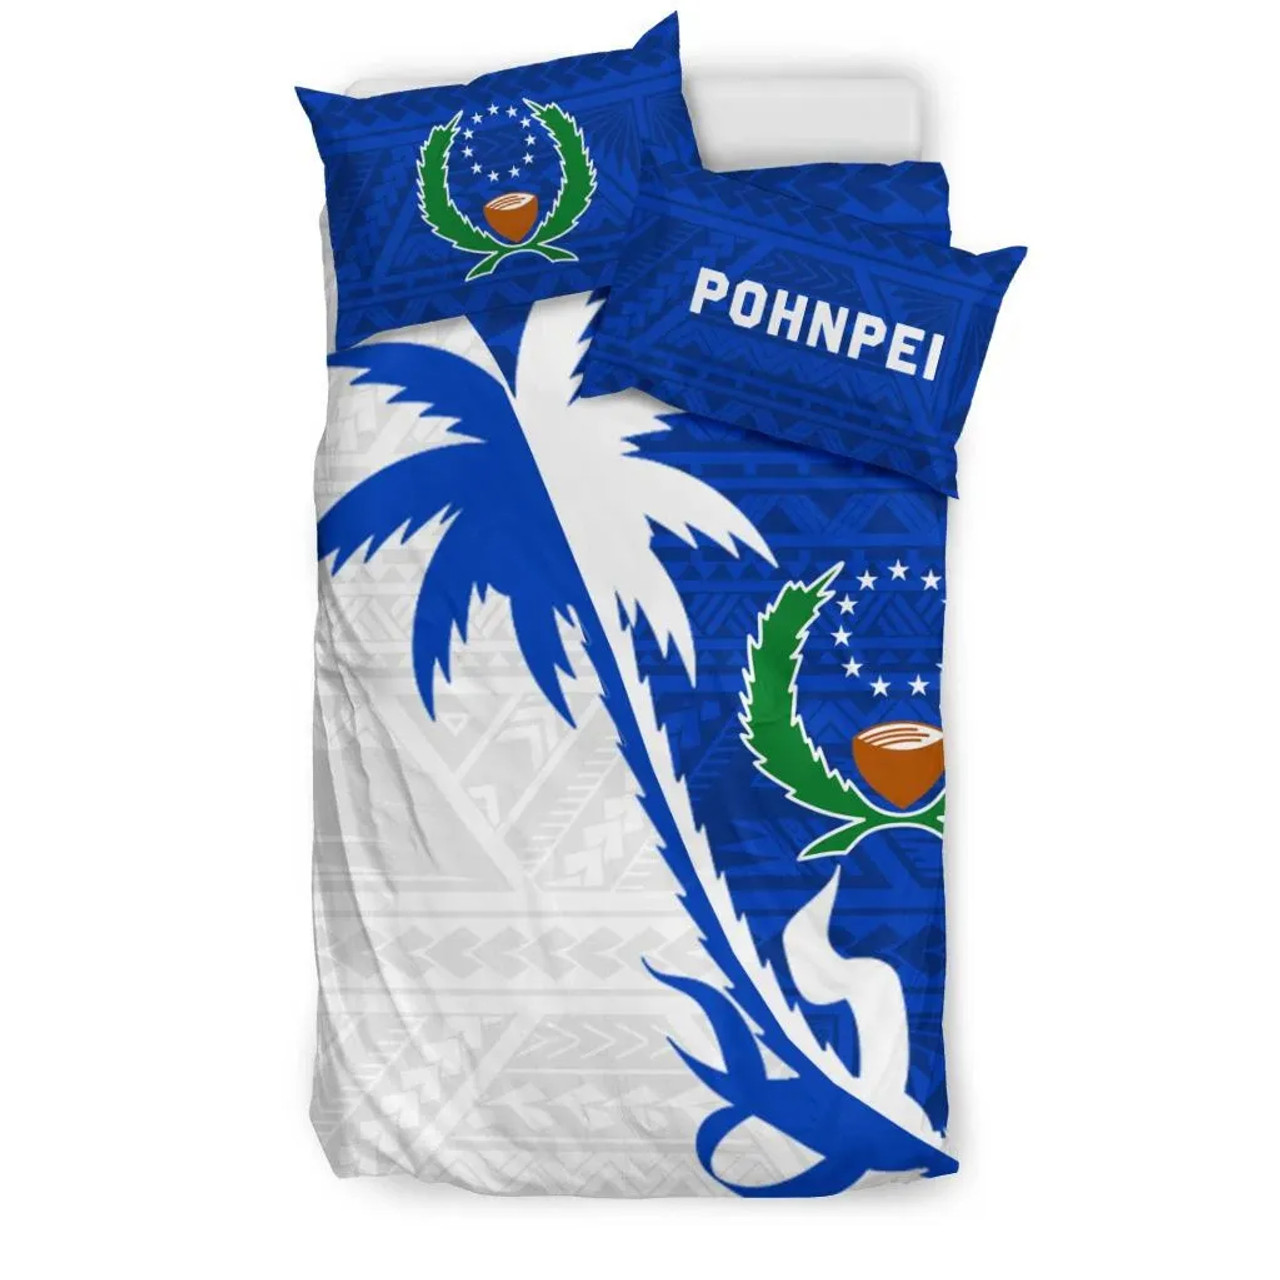 Pohnpei Duvet Cover Set - Pohnpei Flag & Coconut Tree 3